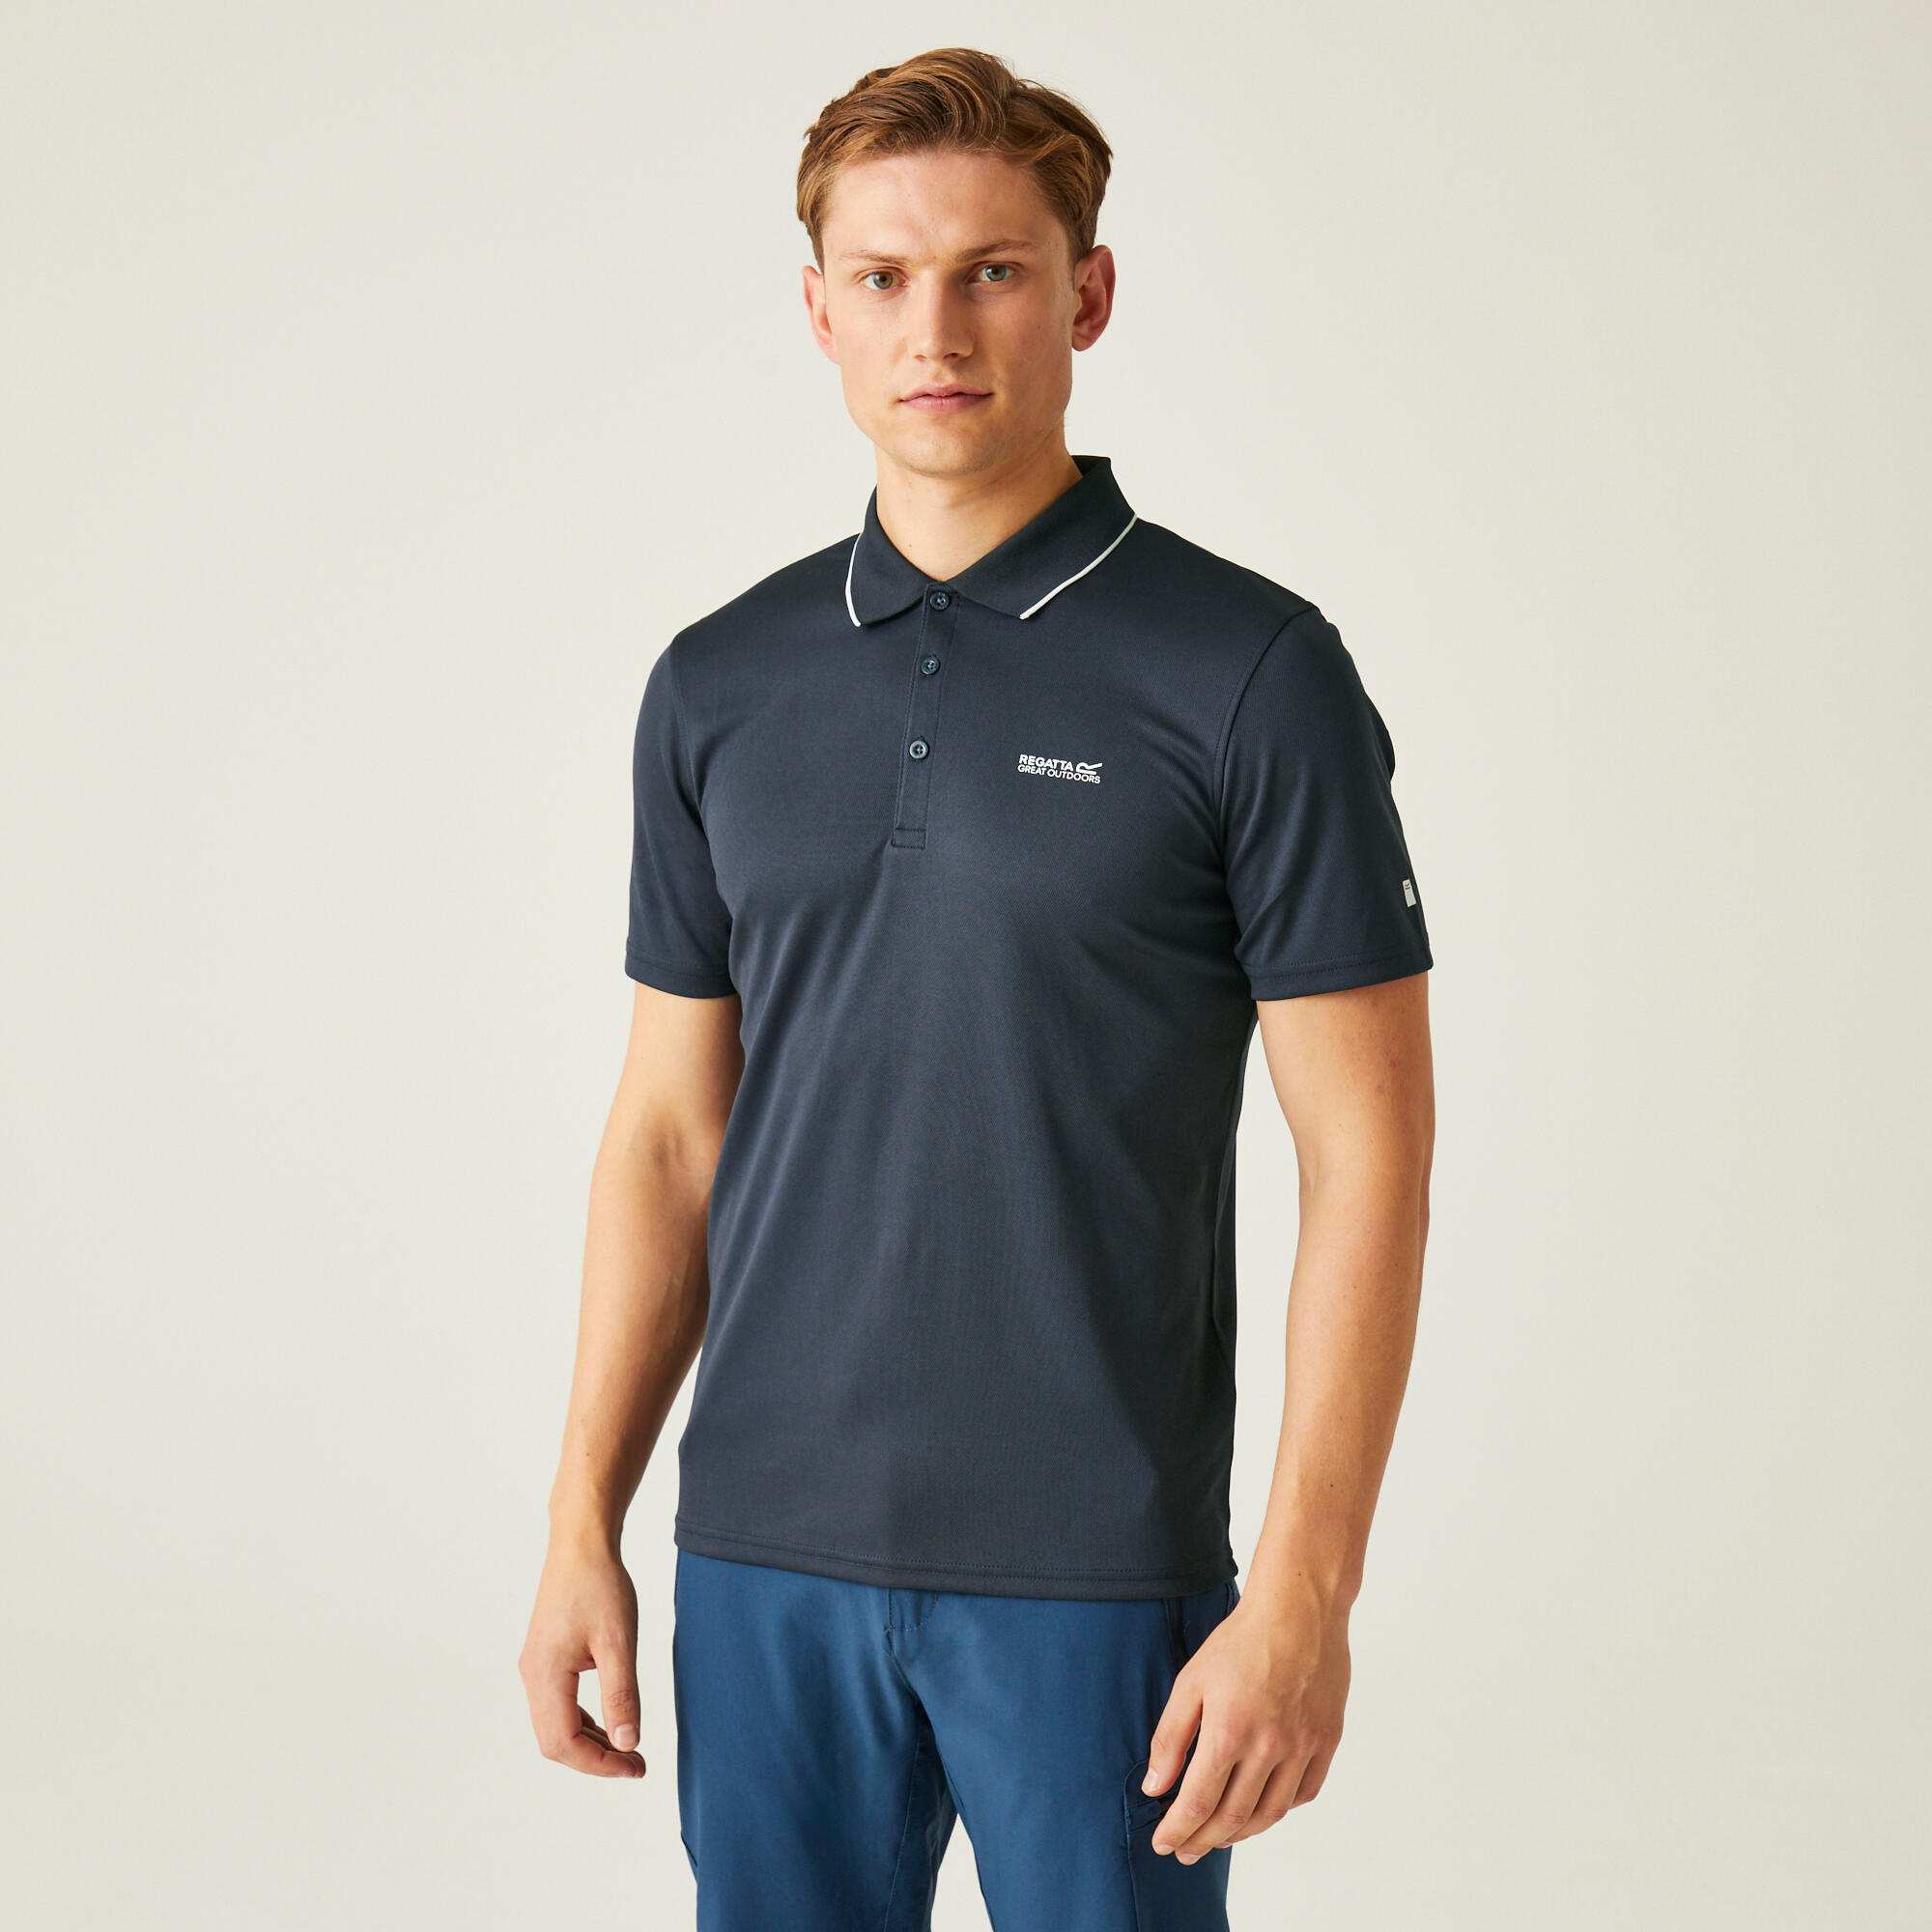 REGATTA Maverik V Men's Fitness Short Sleeve Polo Shirt - Navy